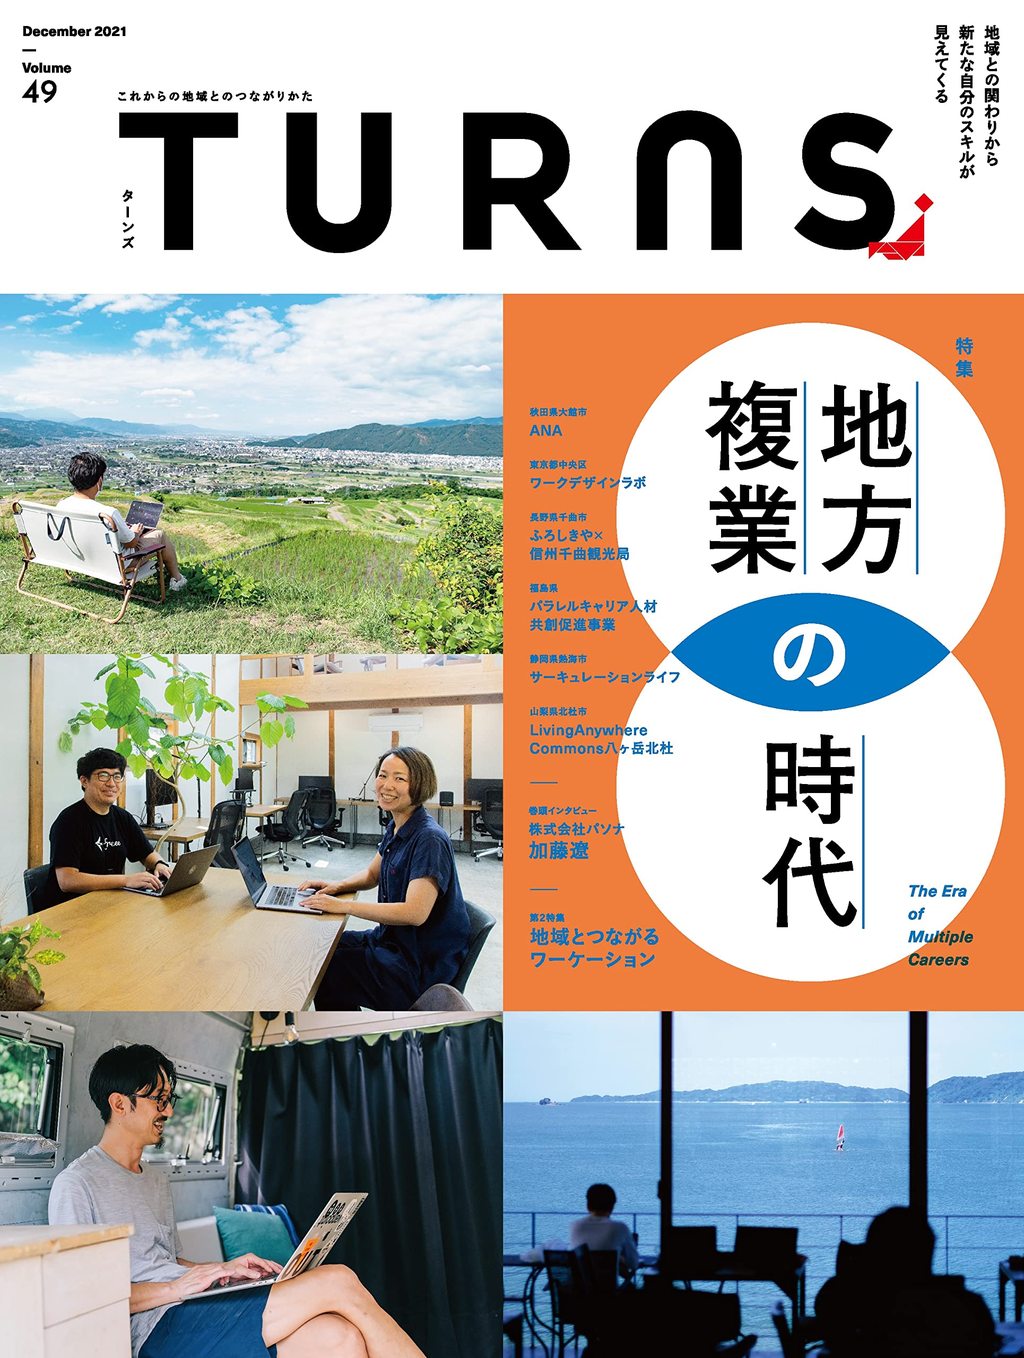 【インタビュー】TURNS vol.49